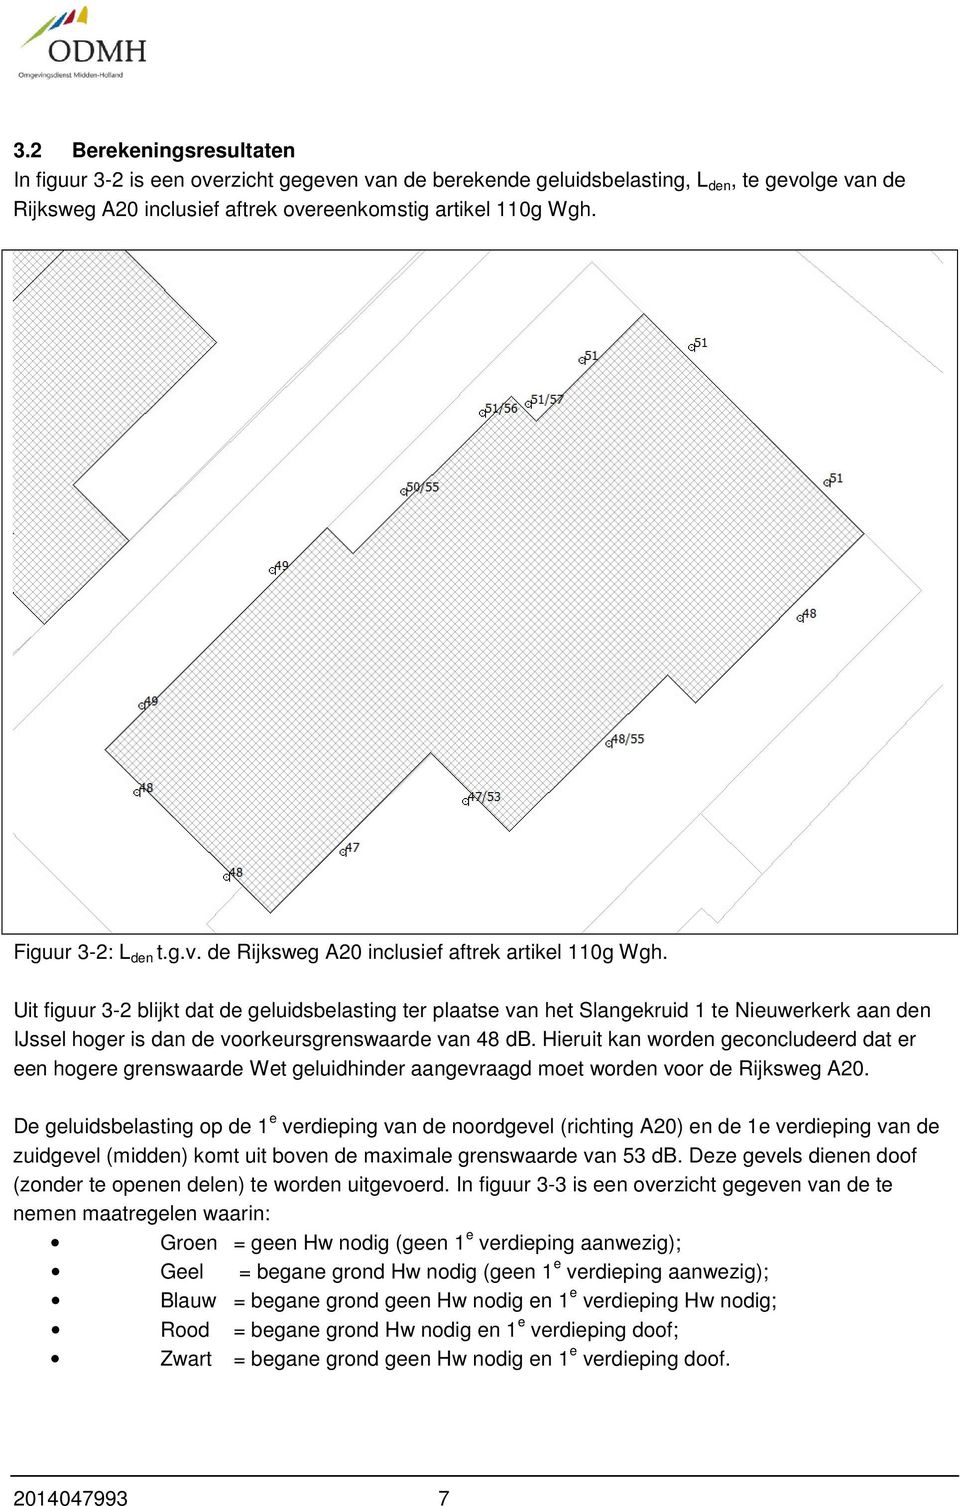 Uit figuur 3-2 blijkt dat de geluidsbelasting ter plaatse van het Slangekruid 1 te Nieuwerkerk aan den IJssel hoger is dan de voorkeursgrenswaarde van 48 db.